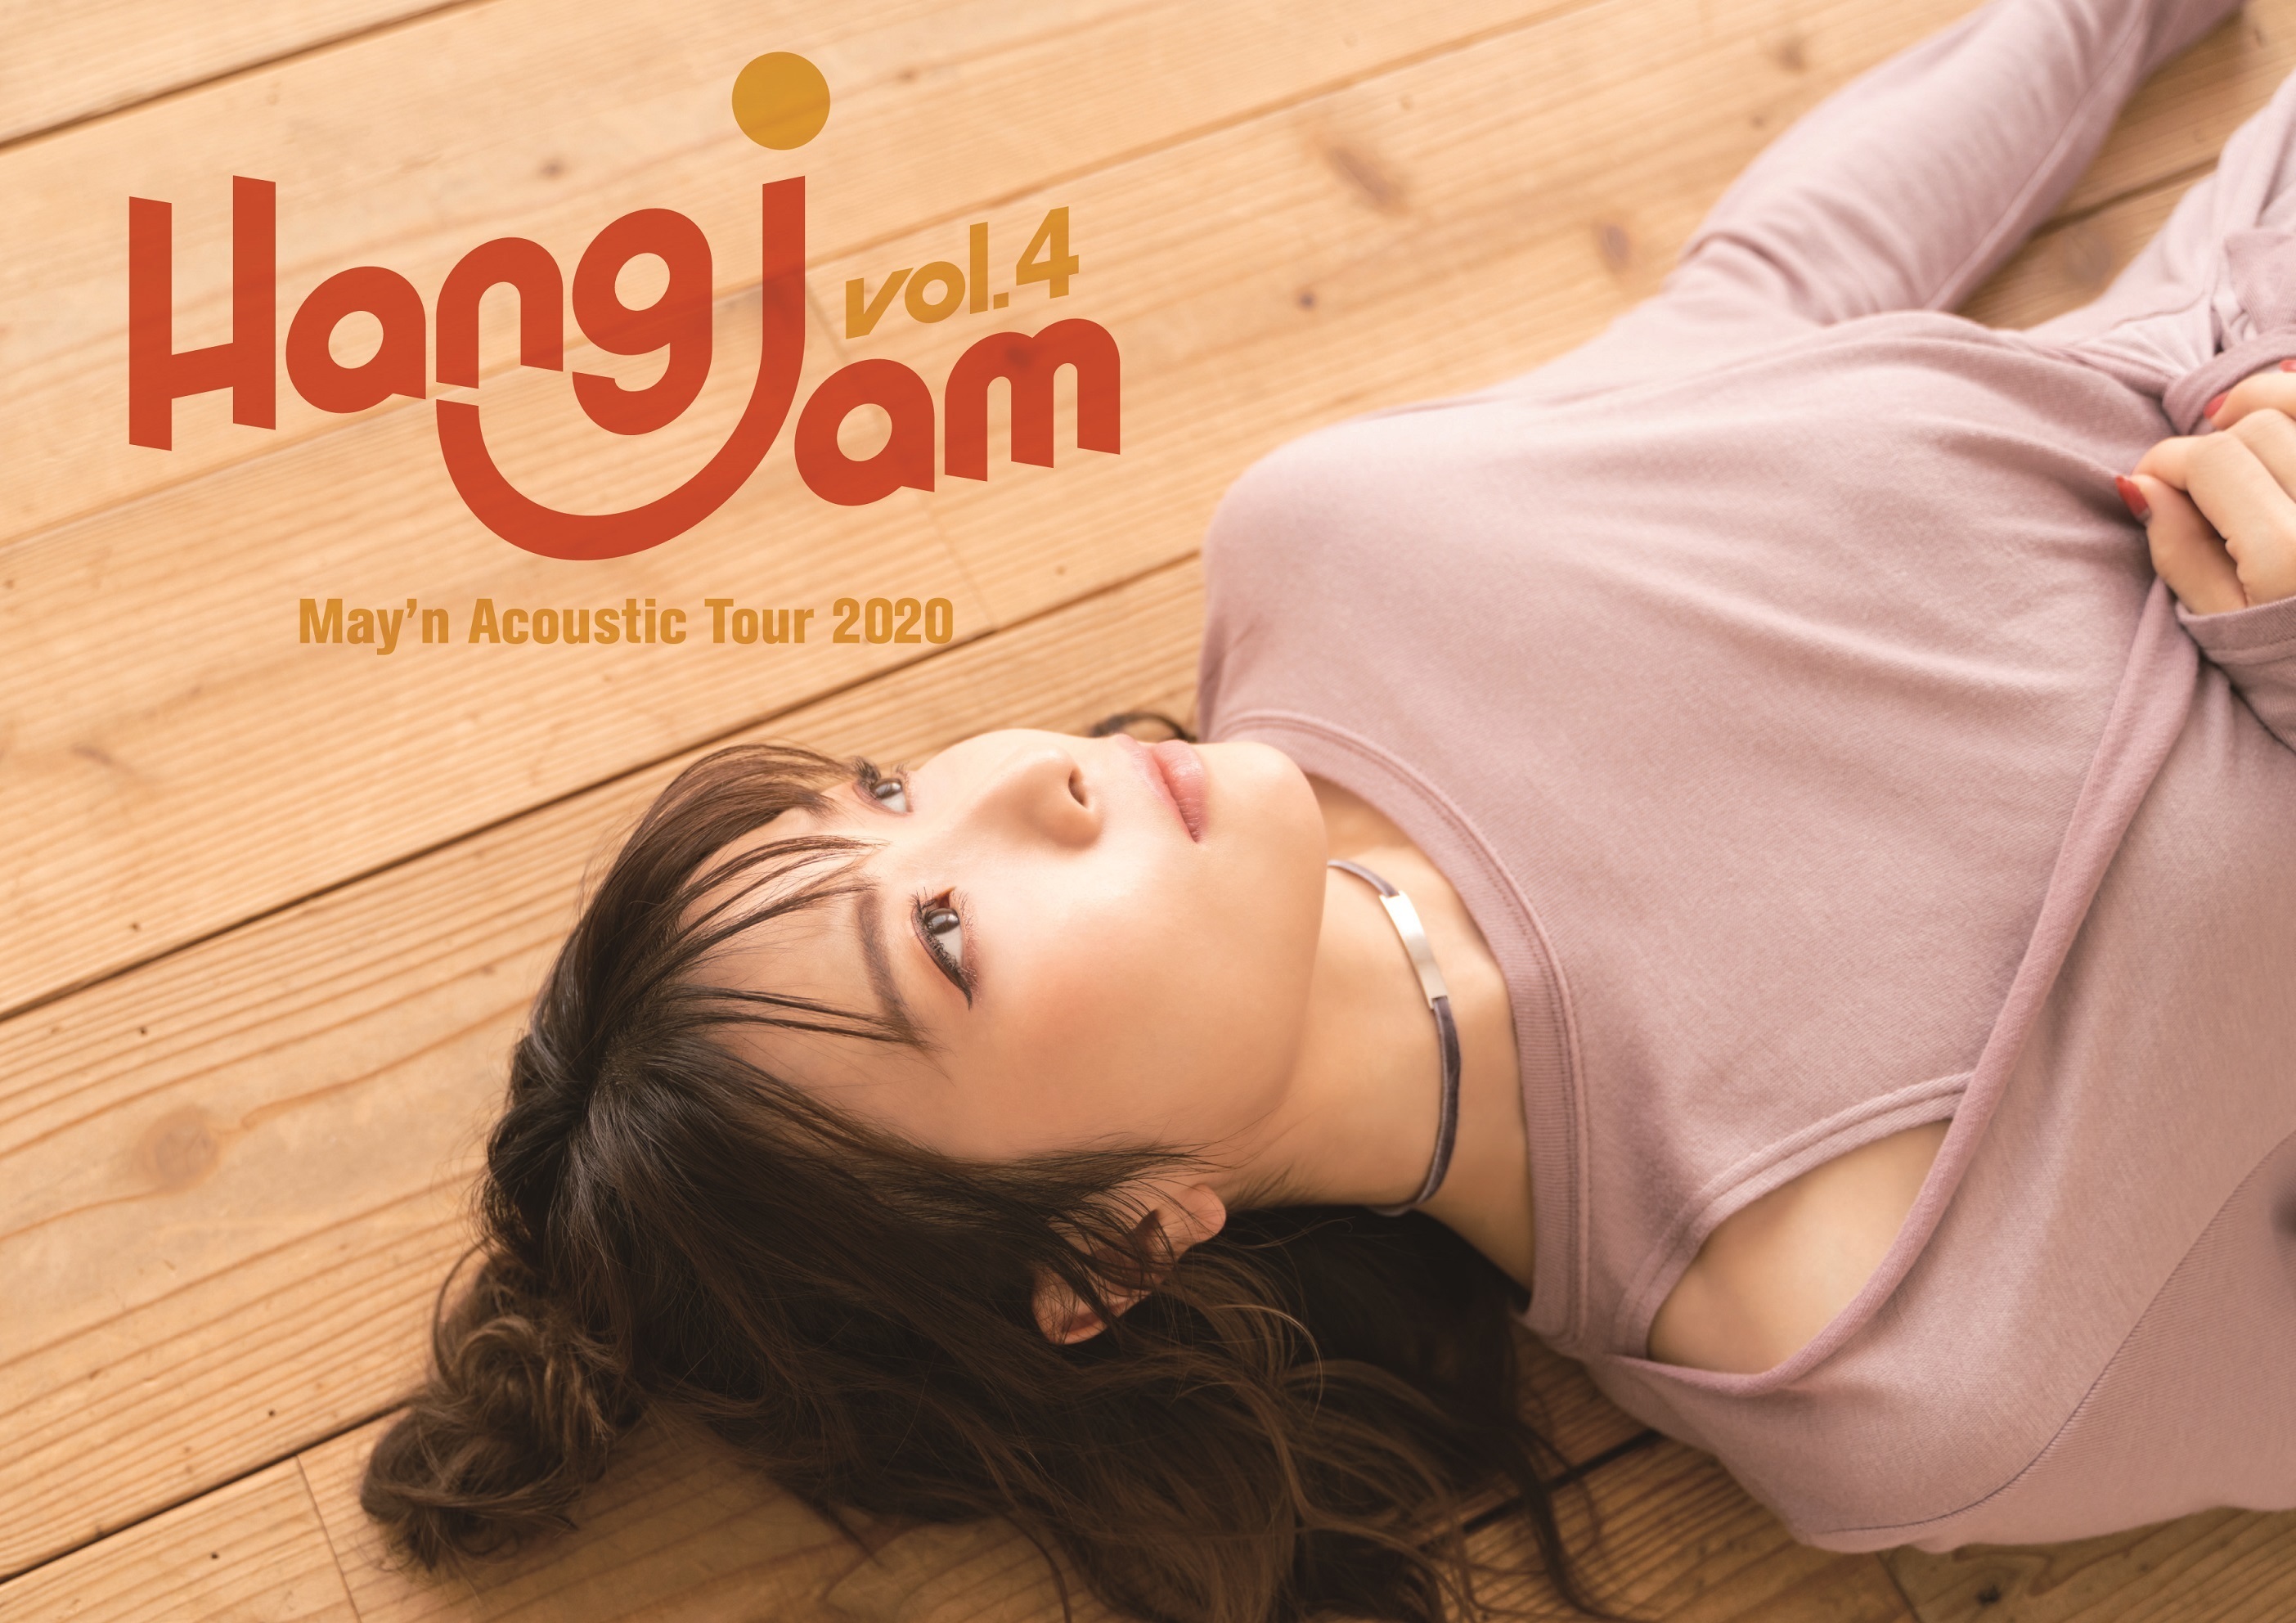 パンフレット　May’n Acoustic Tour 2020 「Hang jam vol.4」